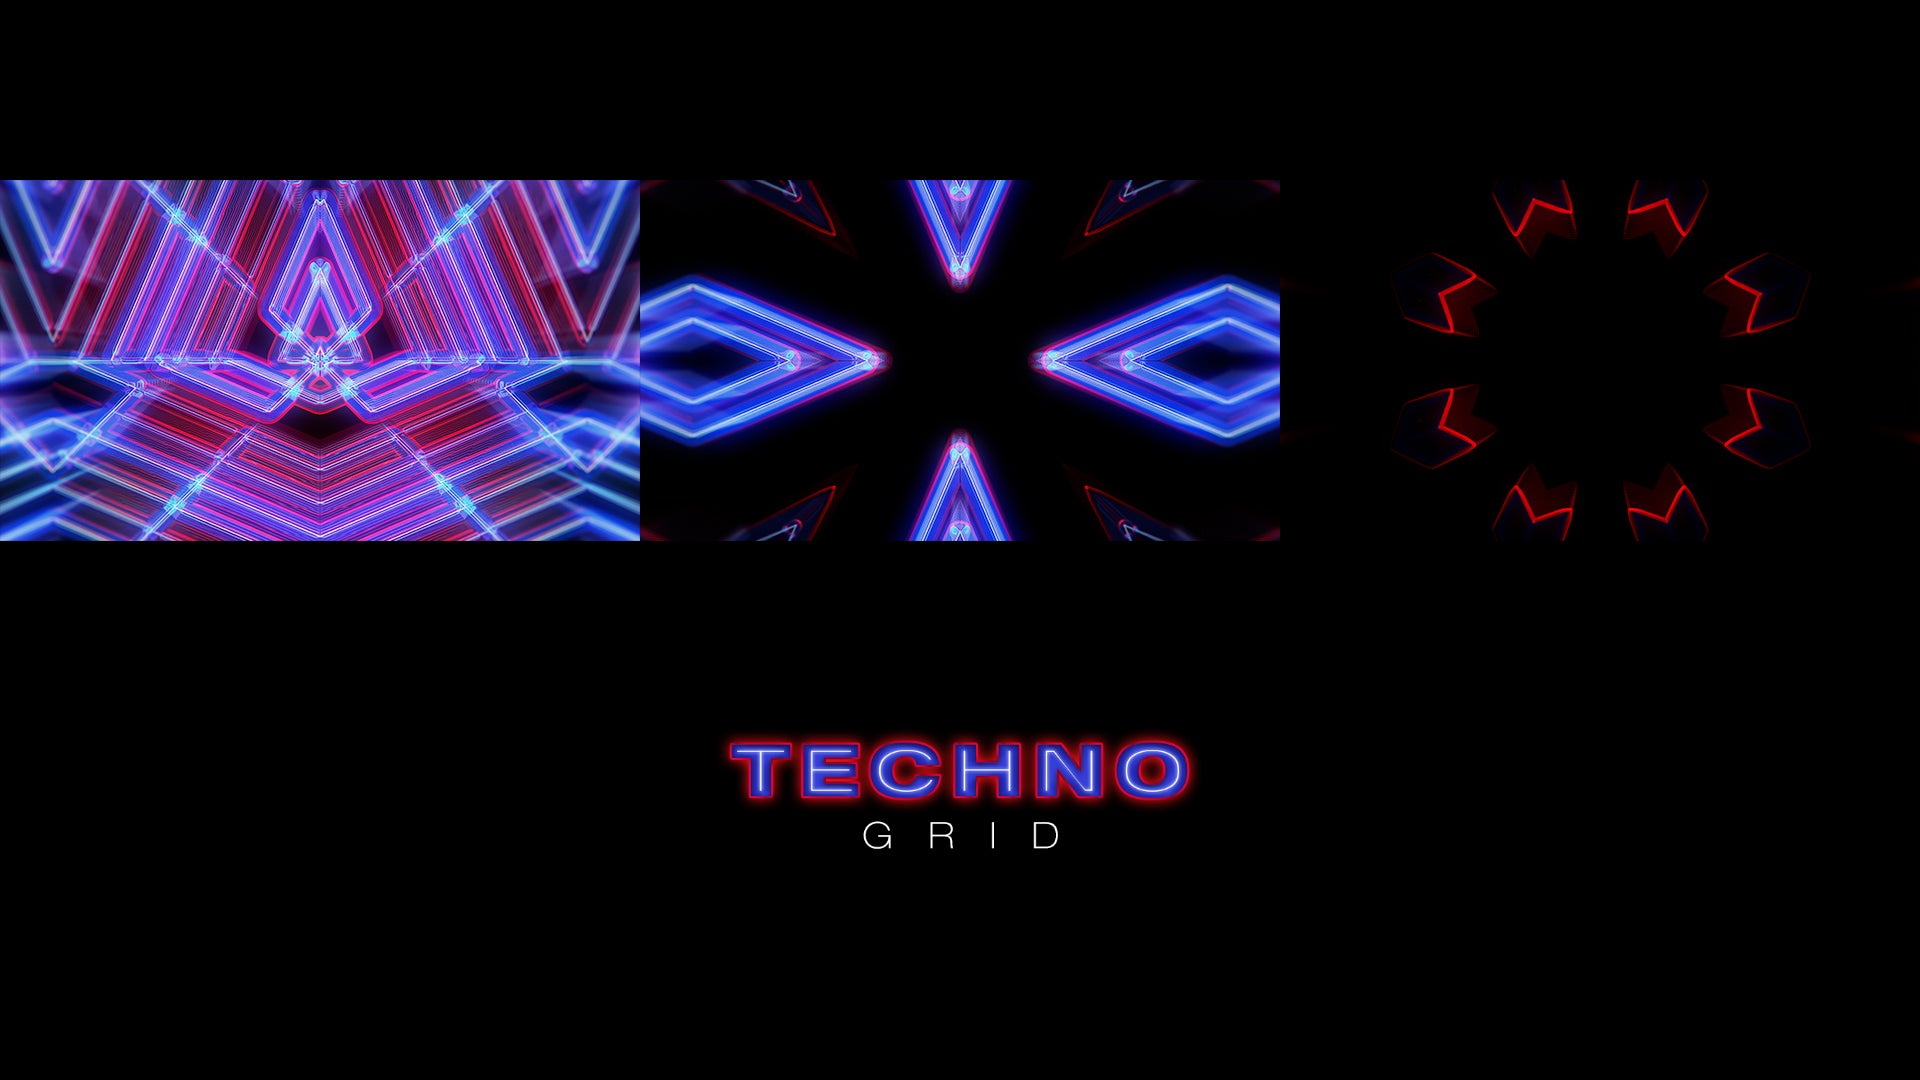 Techno grid, video loop, vj pack, protobacillus, animation, purple, red, blue, loop, vj loop, video loop, vj pack